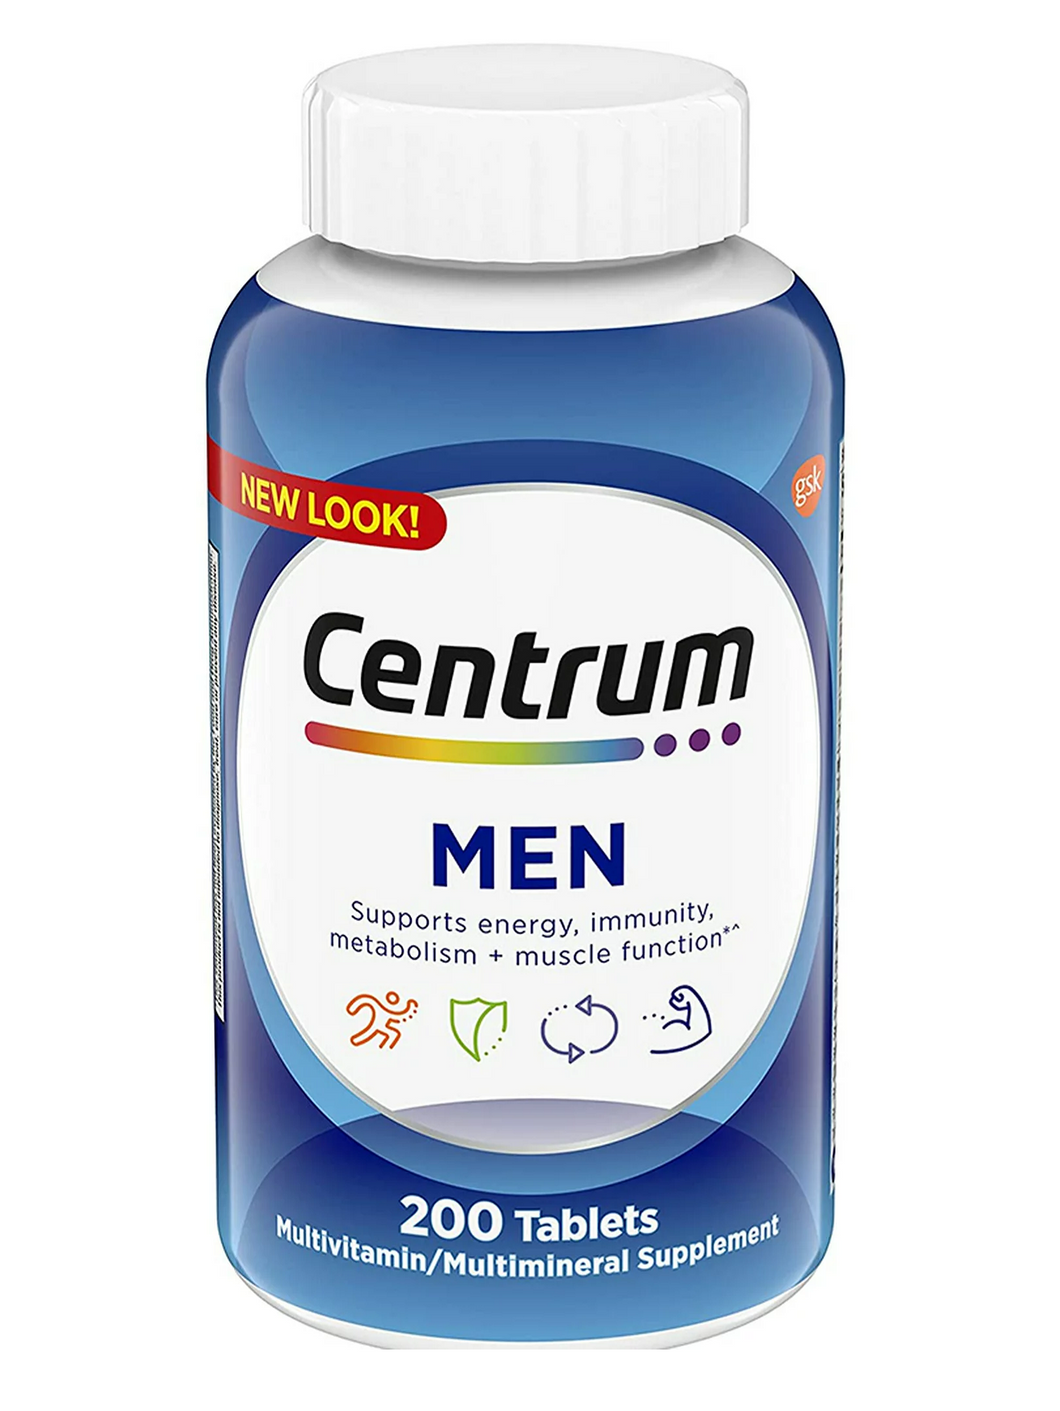 Multivitamínico Centrum para hombres: Vitaminas, Minerales, Energía, Metabolismo, Inmunidad, Músculos y Huesos. 200 tabletas